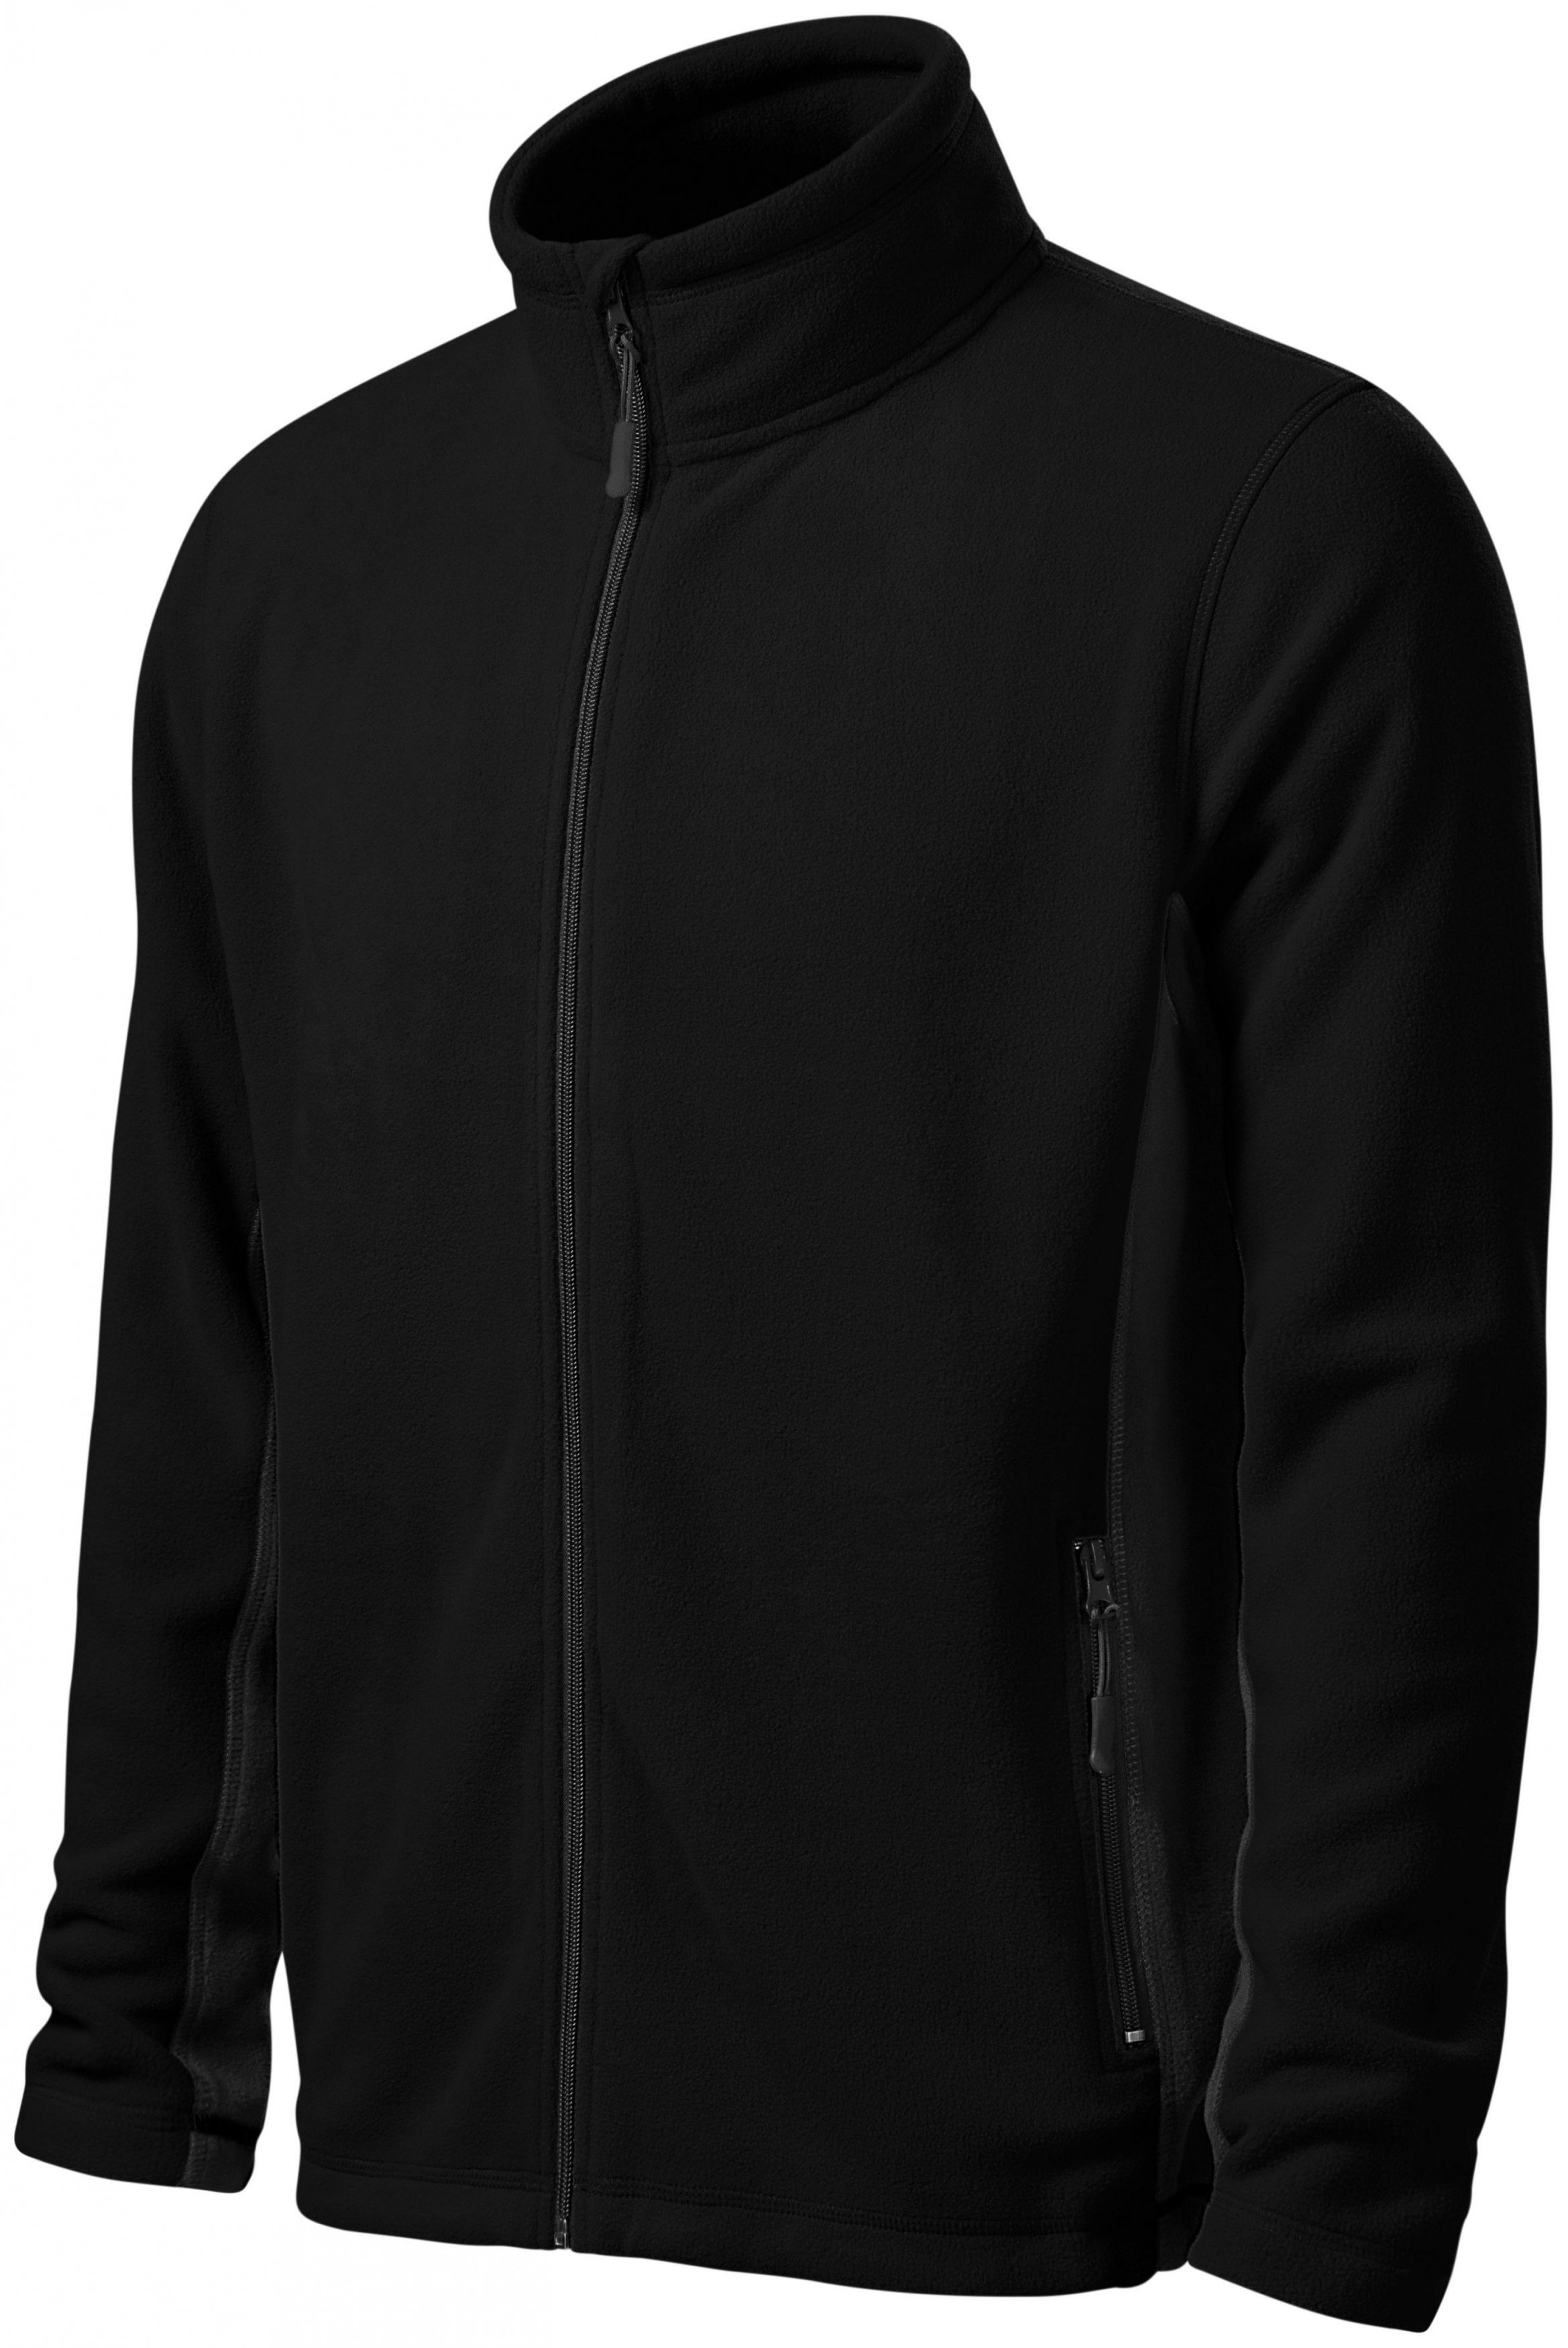 Pánska fleecová bunda kontrastná, čierna, 2XL